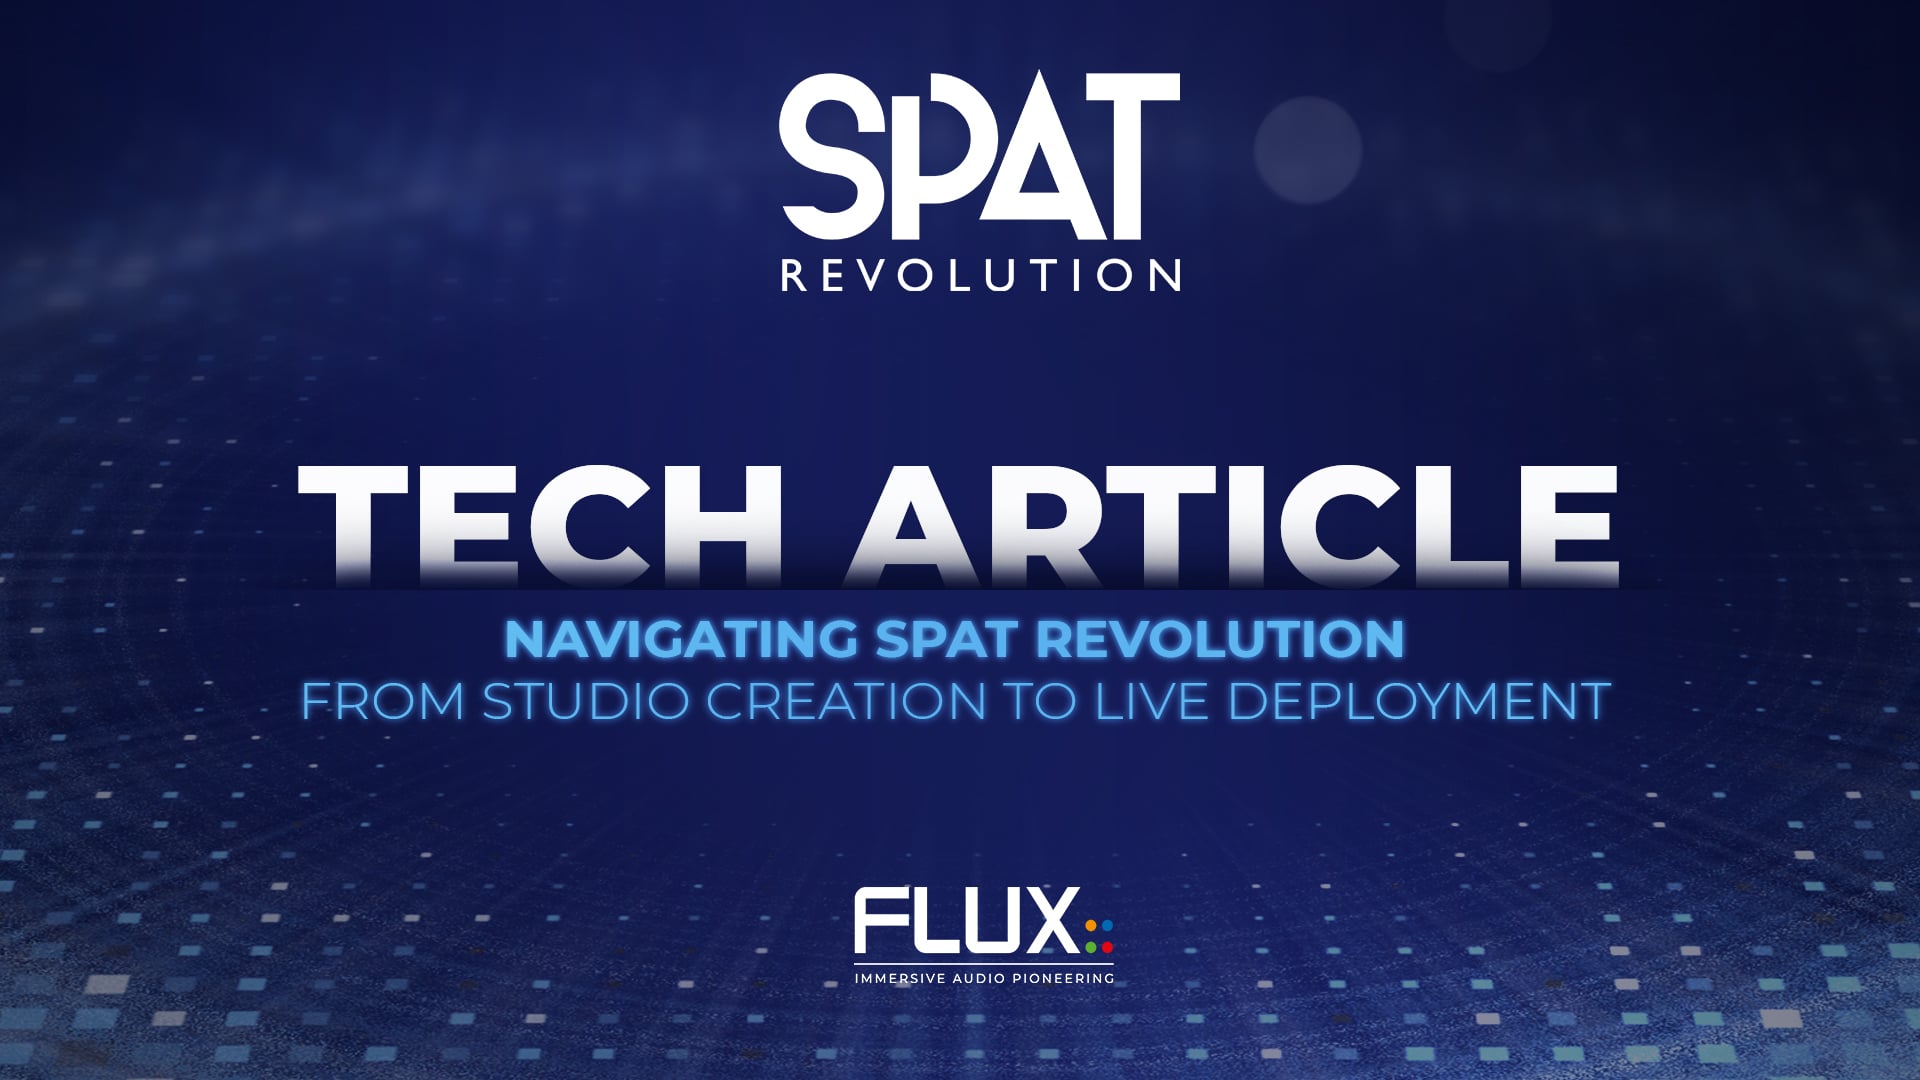 SPAT Revolution - Tech Article - Navigating SPAT Revolution